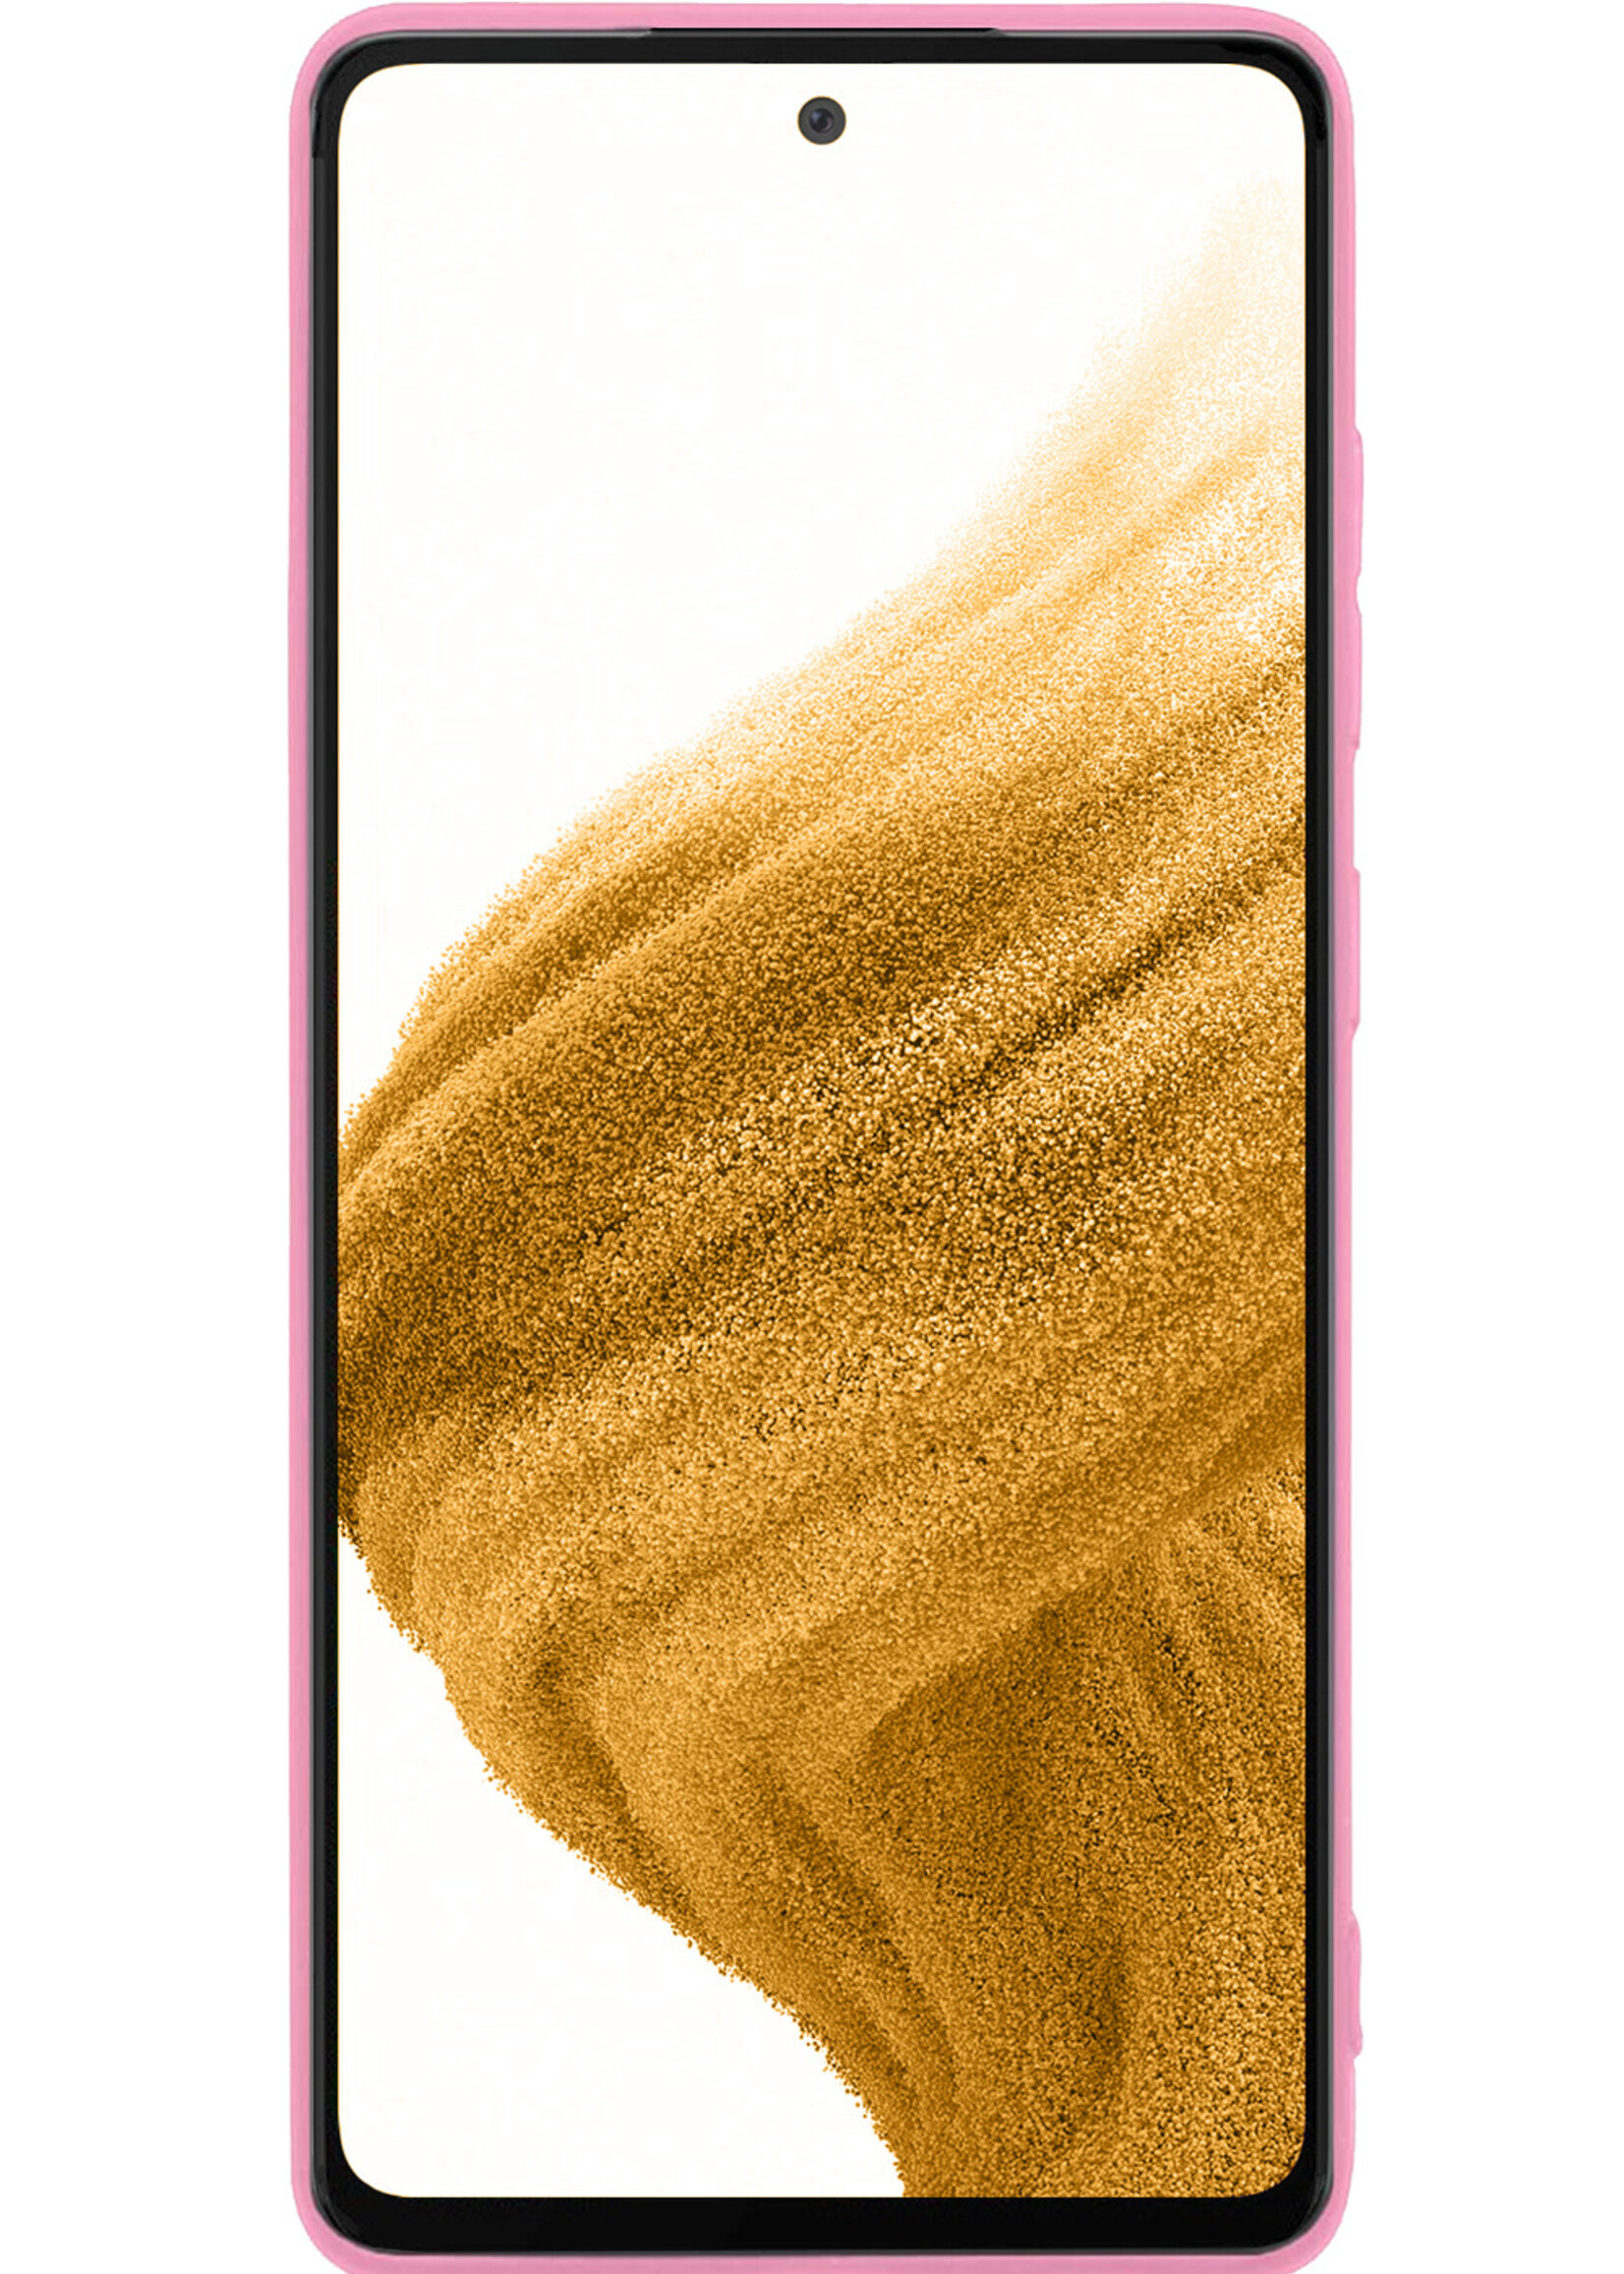 LUQ Hoesje Geschikt voor Samsung A53 Hoesje Siliconen Case - Hoes Geschikt voor Samsung Galaxy A53 Hoes Siliconen - Lichtroze - 2 Stuks